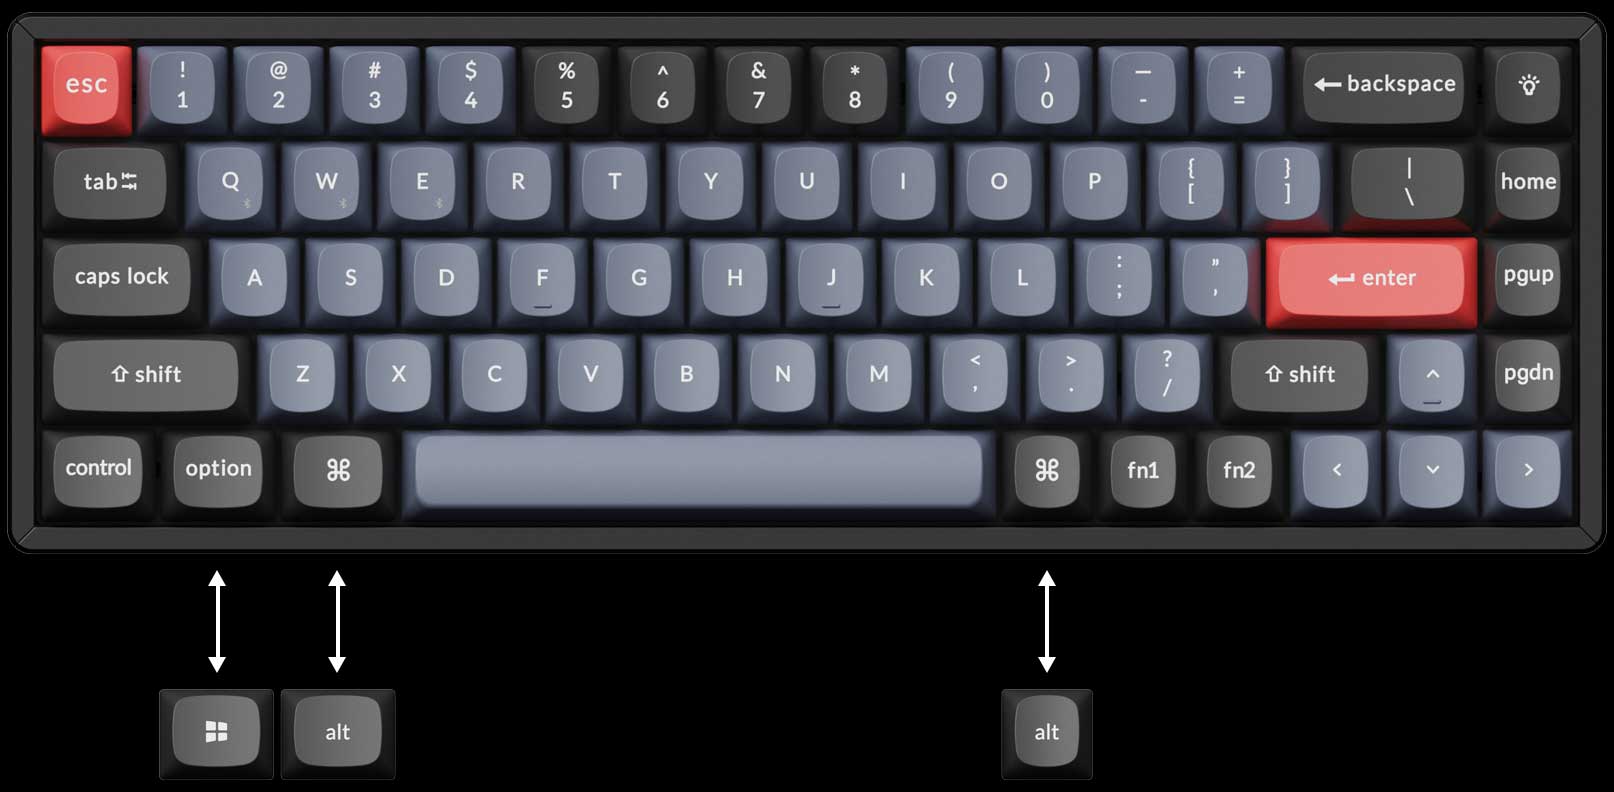 Diseño del teclado Keychron K6 Pro